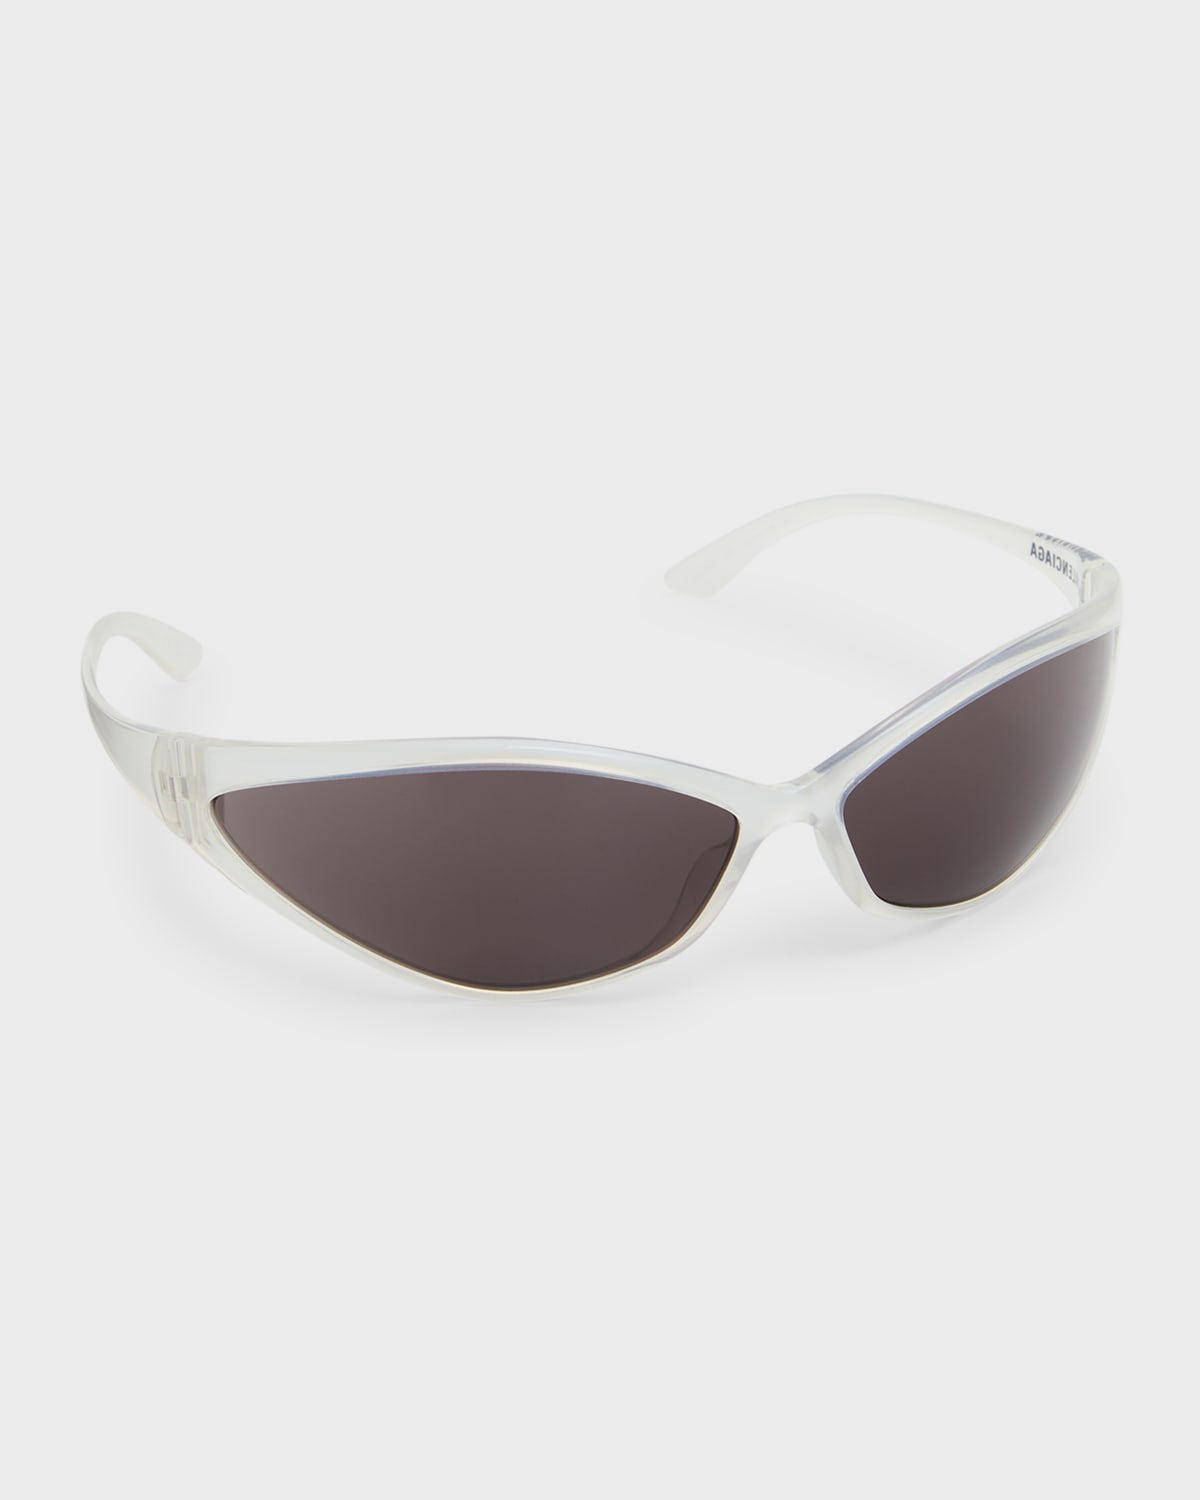 Men's Acetate Wrap Sunglasses